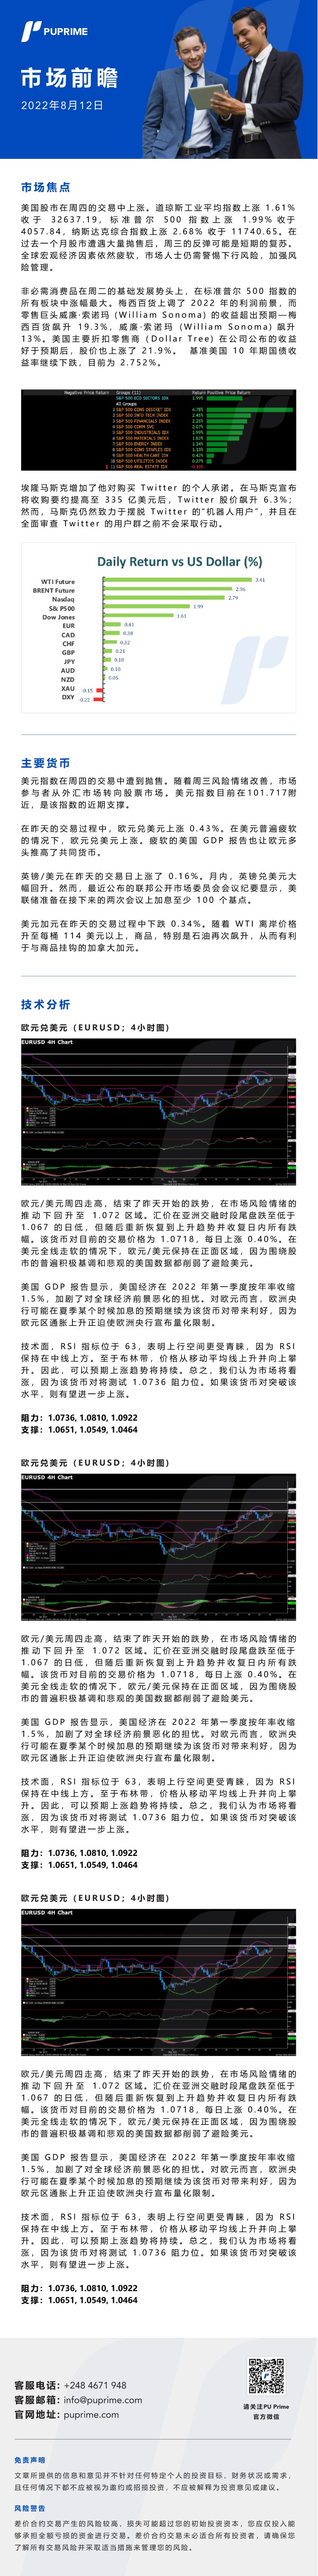 市场前瞻_中文.jpg